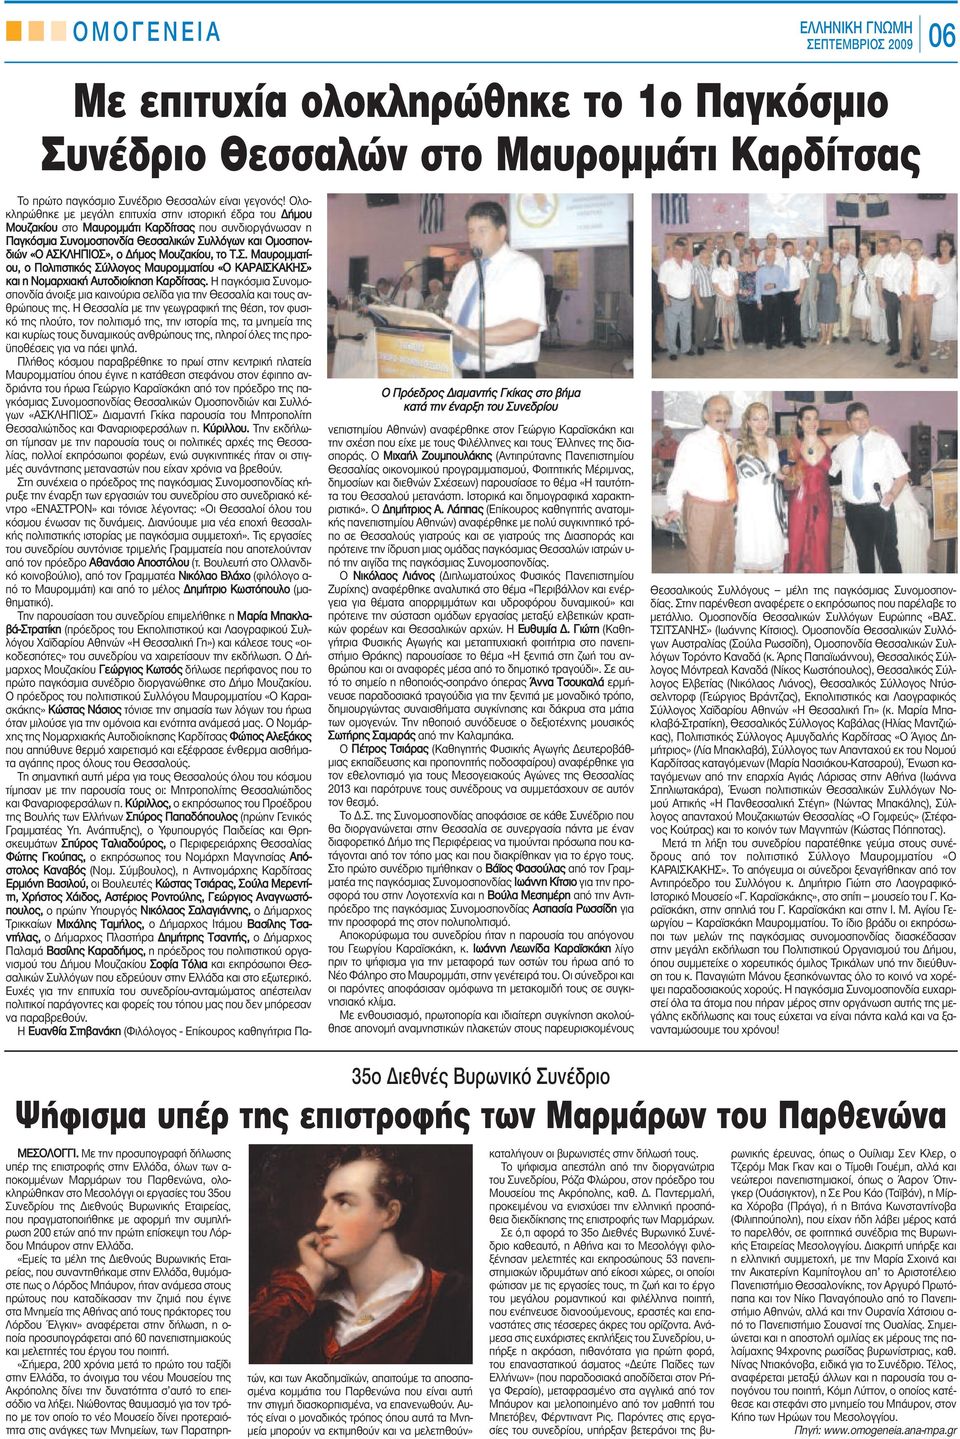 Ολοκληρώθηκε με μεγάλη επιτυχία στην ιστορική έδρα του Δήμου Μουζακίου στο Μαυρομμάτι Καρδίτσας που συνδιοργάνωσαν η Παγκόσμια Συνομοσπονδία Θεσσαλικών Συλλόγων και Ομοσπονδιών «Ο ΑΣΚΛΗΠΙΟΣ», ο Δήμος